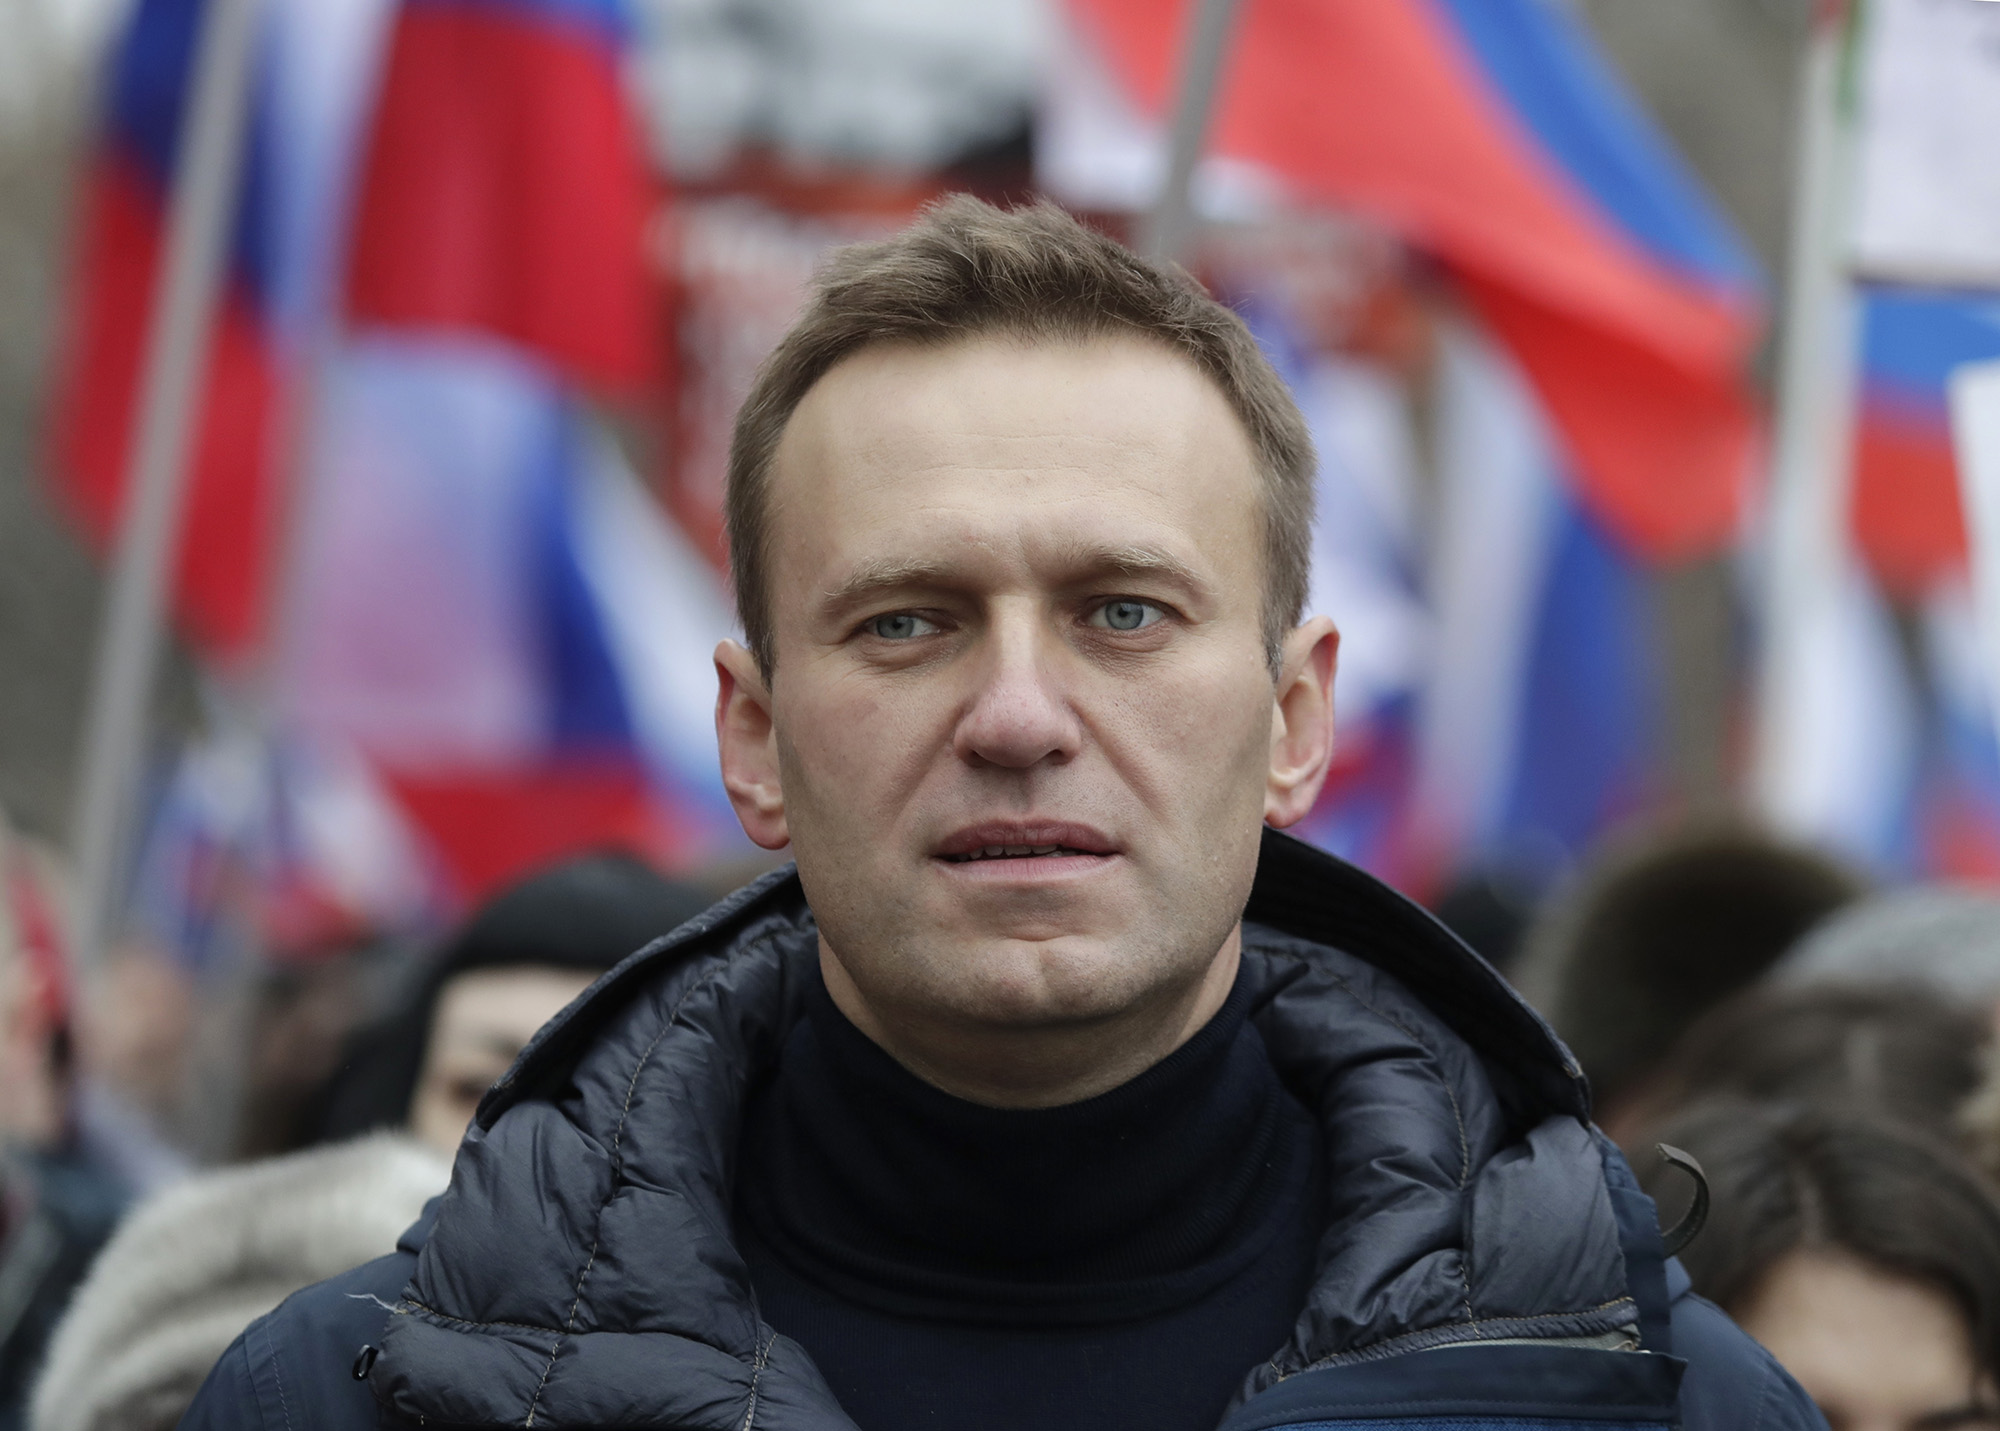 El activista opositor ruso Alexei Navalny participa en una marcha en memoria del líder opositor Boris Nemtsov en Moscú, Rusia, el 24 de febrero de 2019.